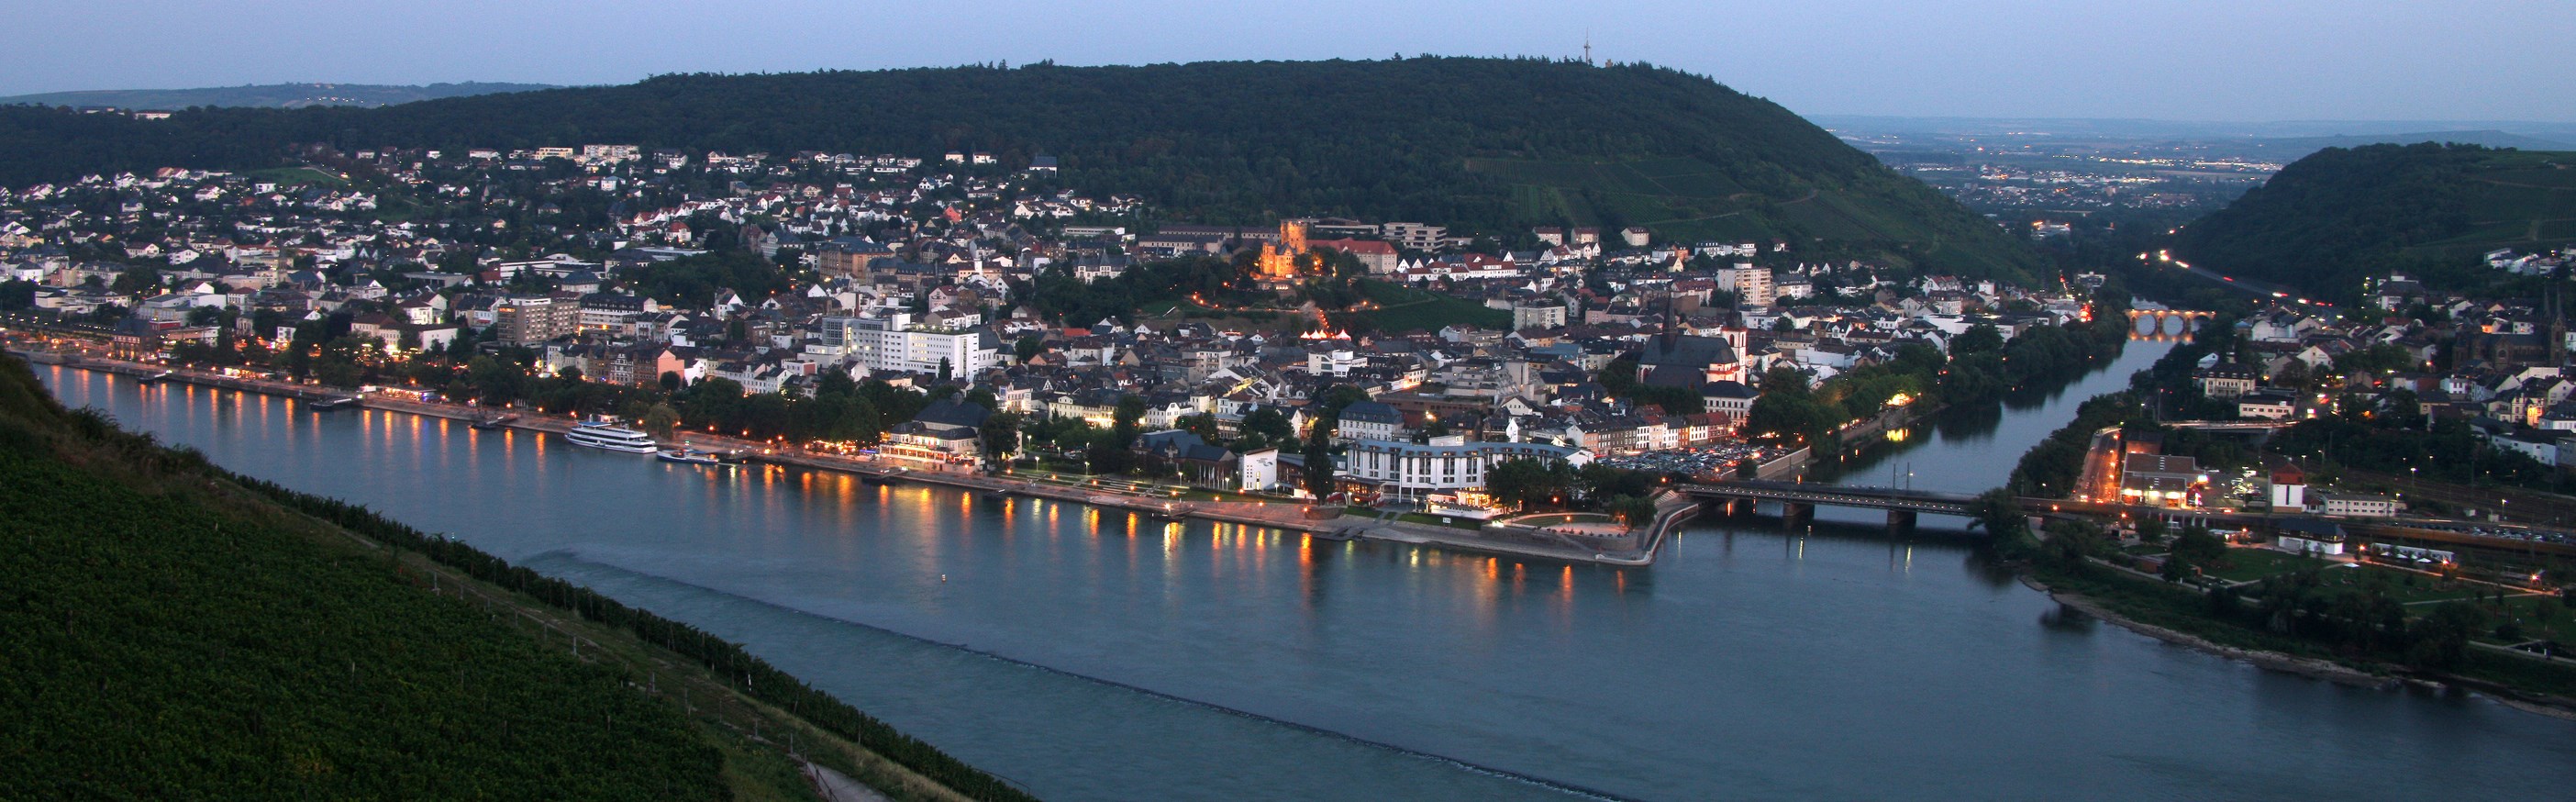 Bingen von der anderen Rheinseite aus gesehen.
